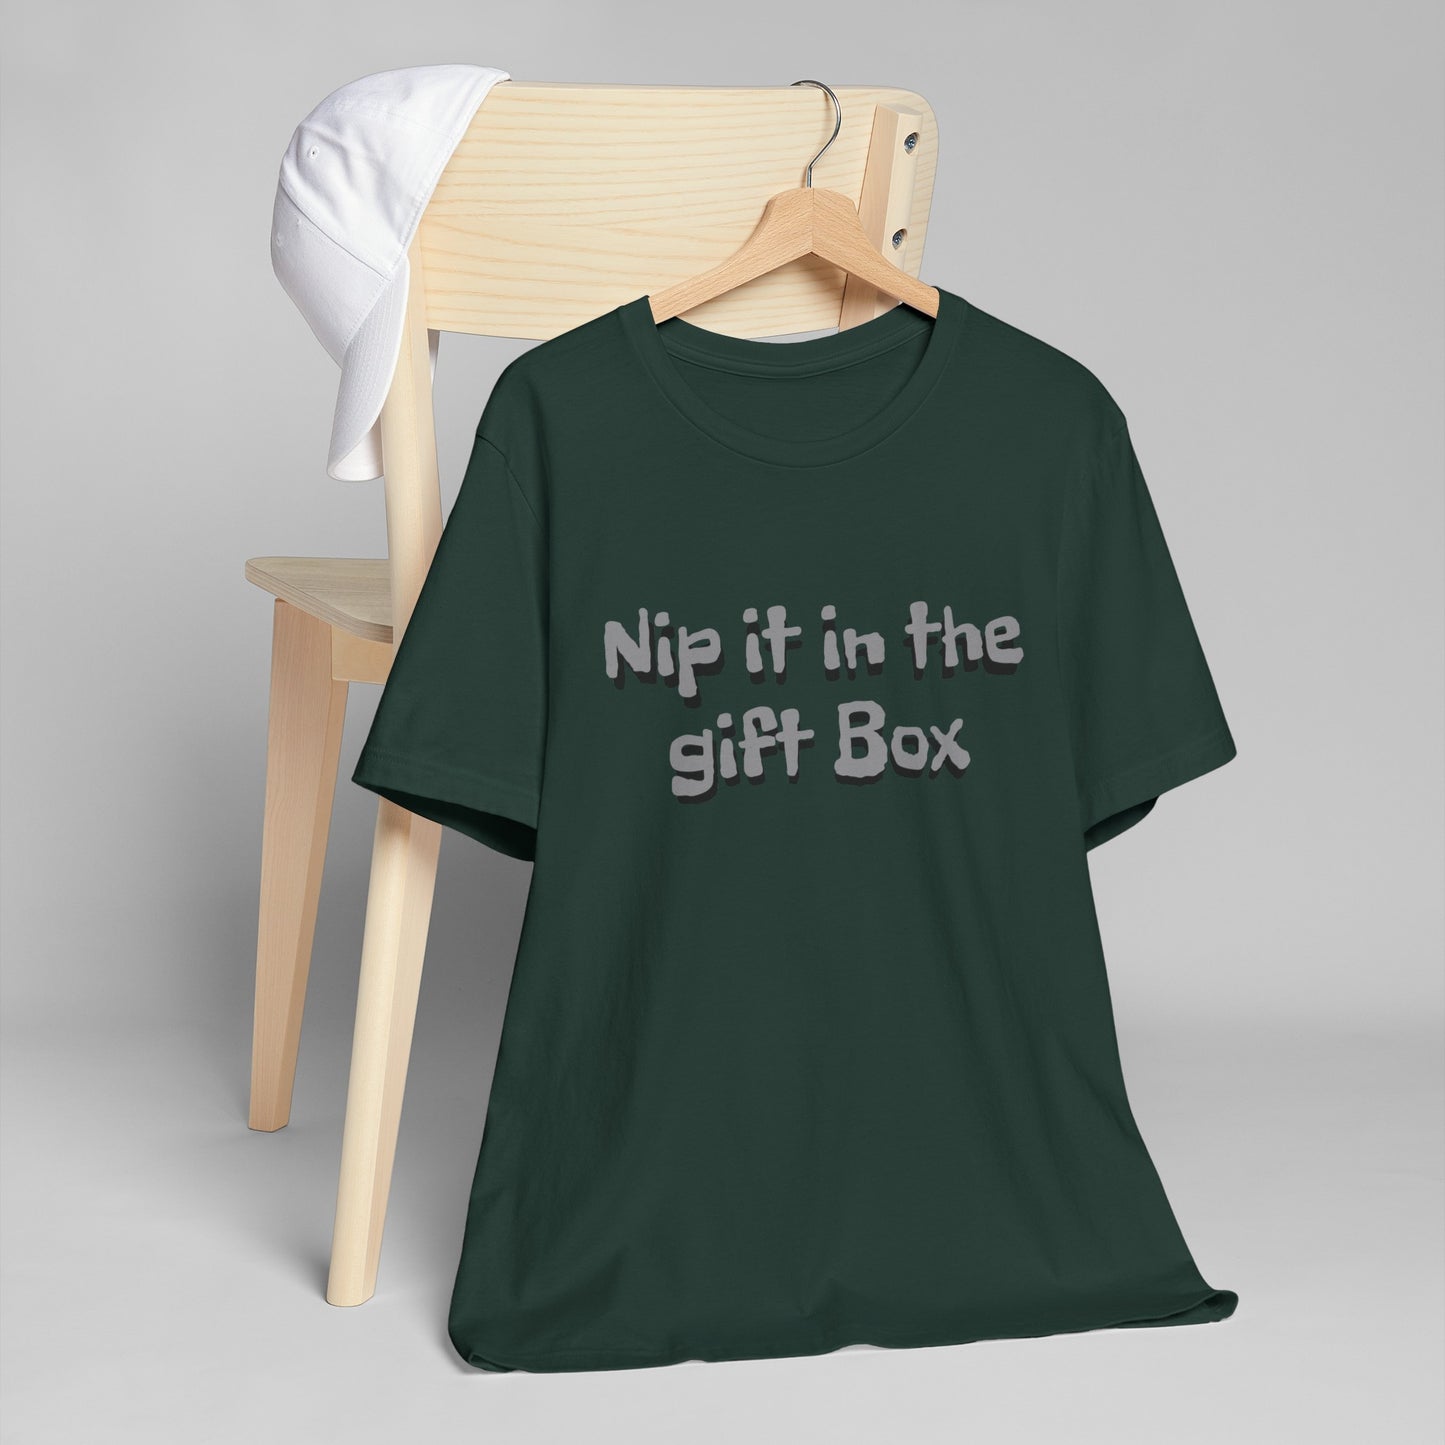 "Nip it in the Gift Box"